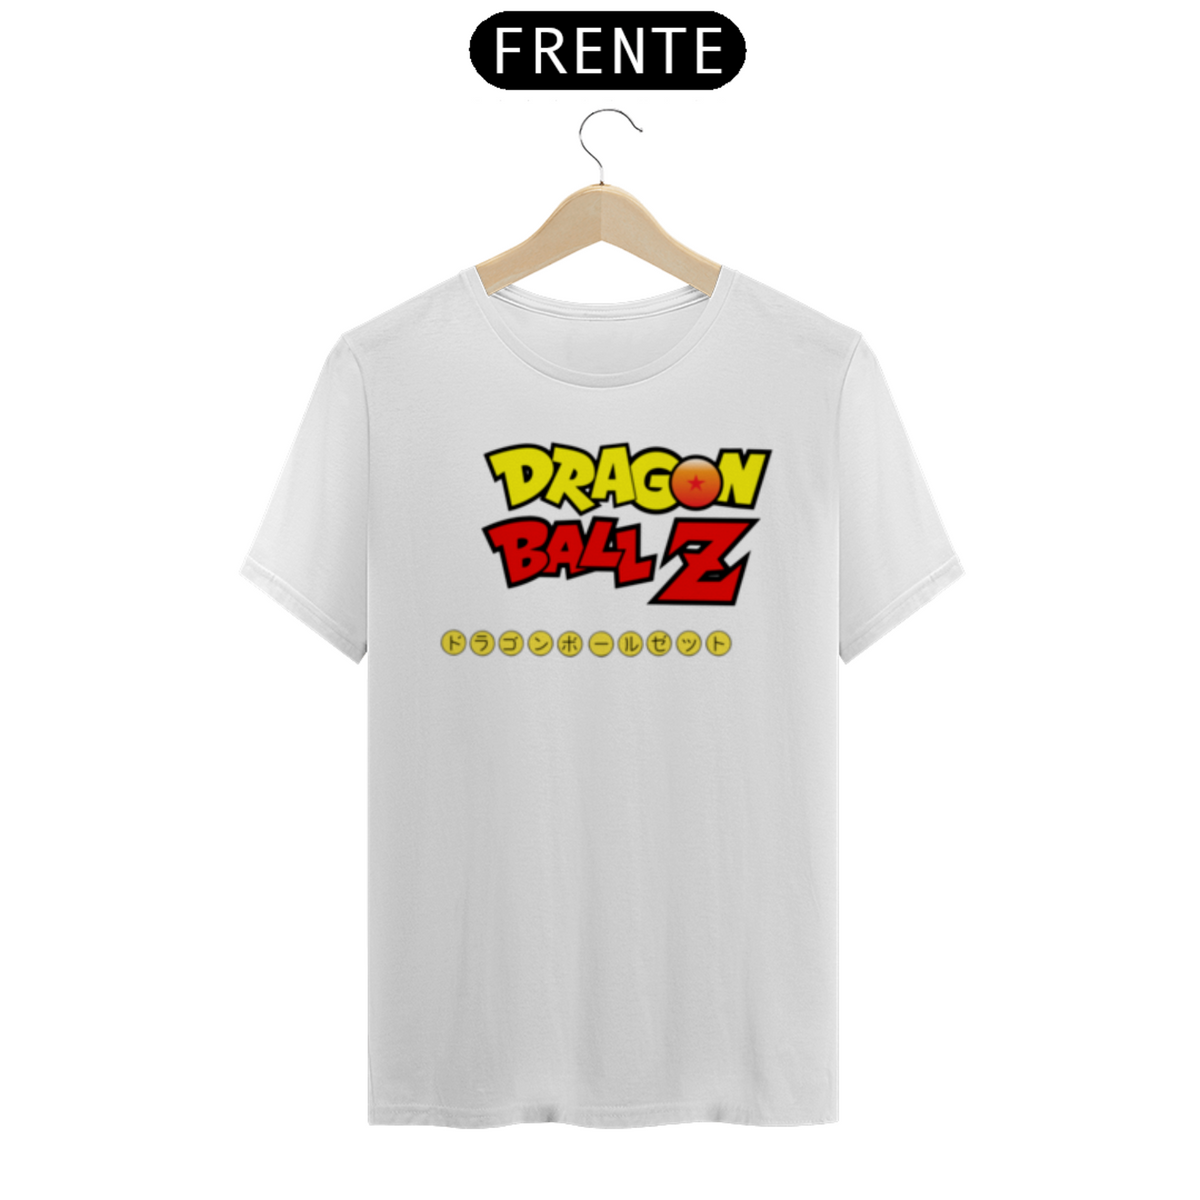 Nome do produto: Dragon Ball Z